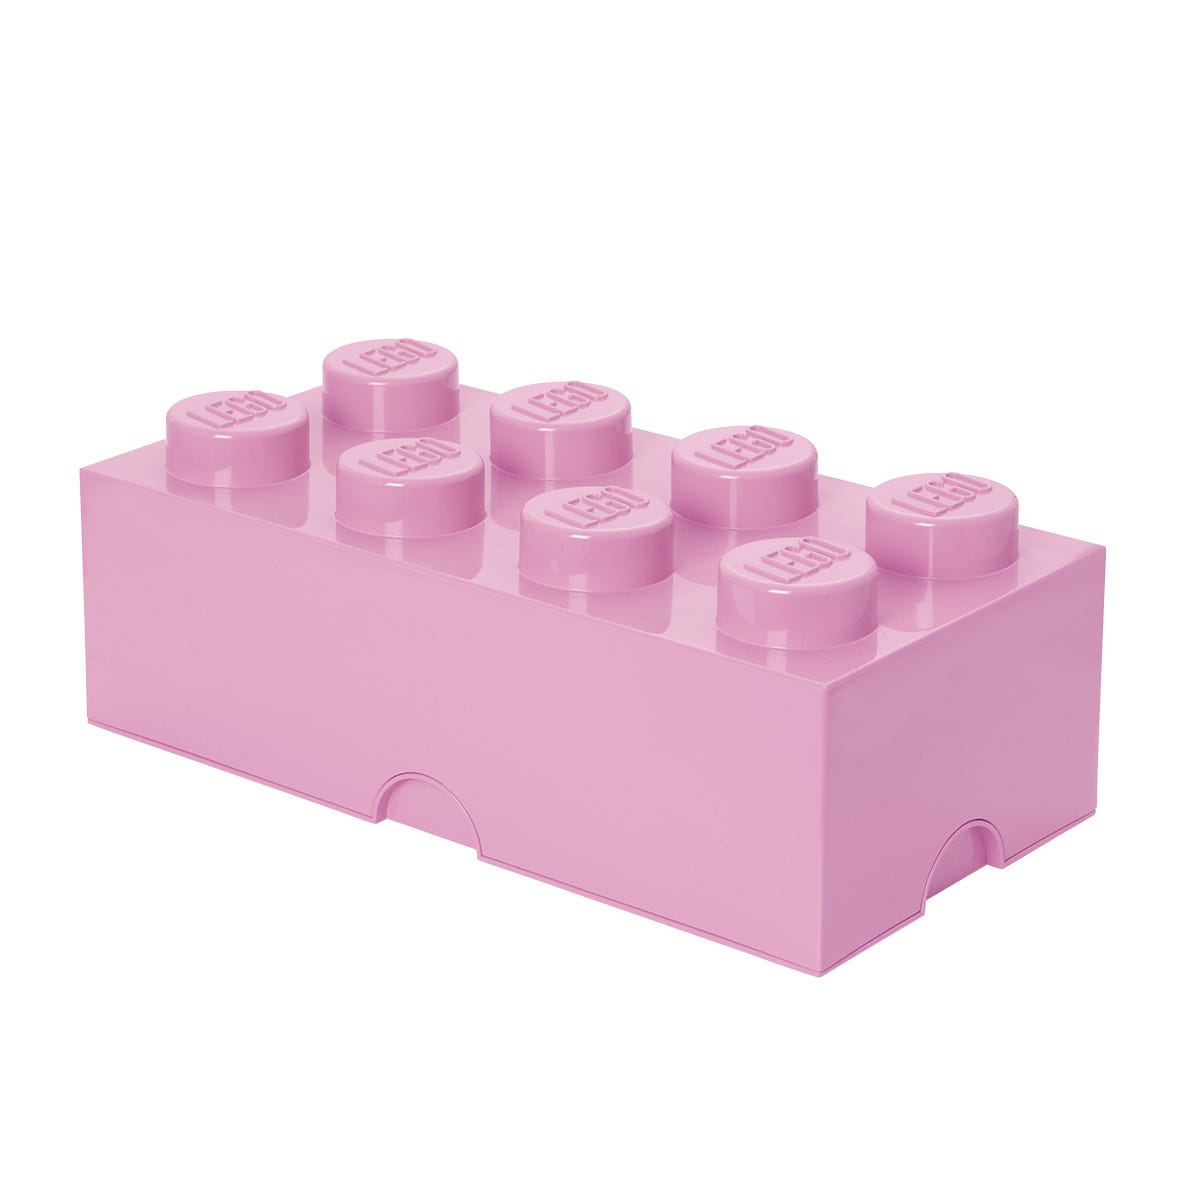 LEGO Ladrillo de Almacenamiento de 8 Espigas (violeta claro)